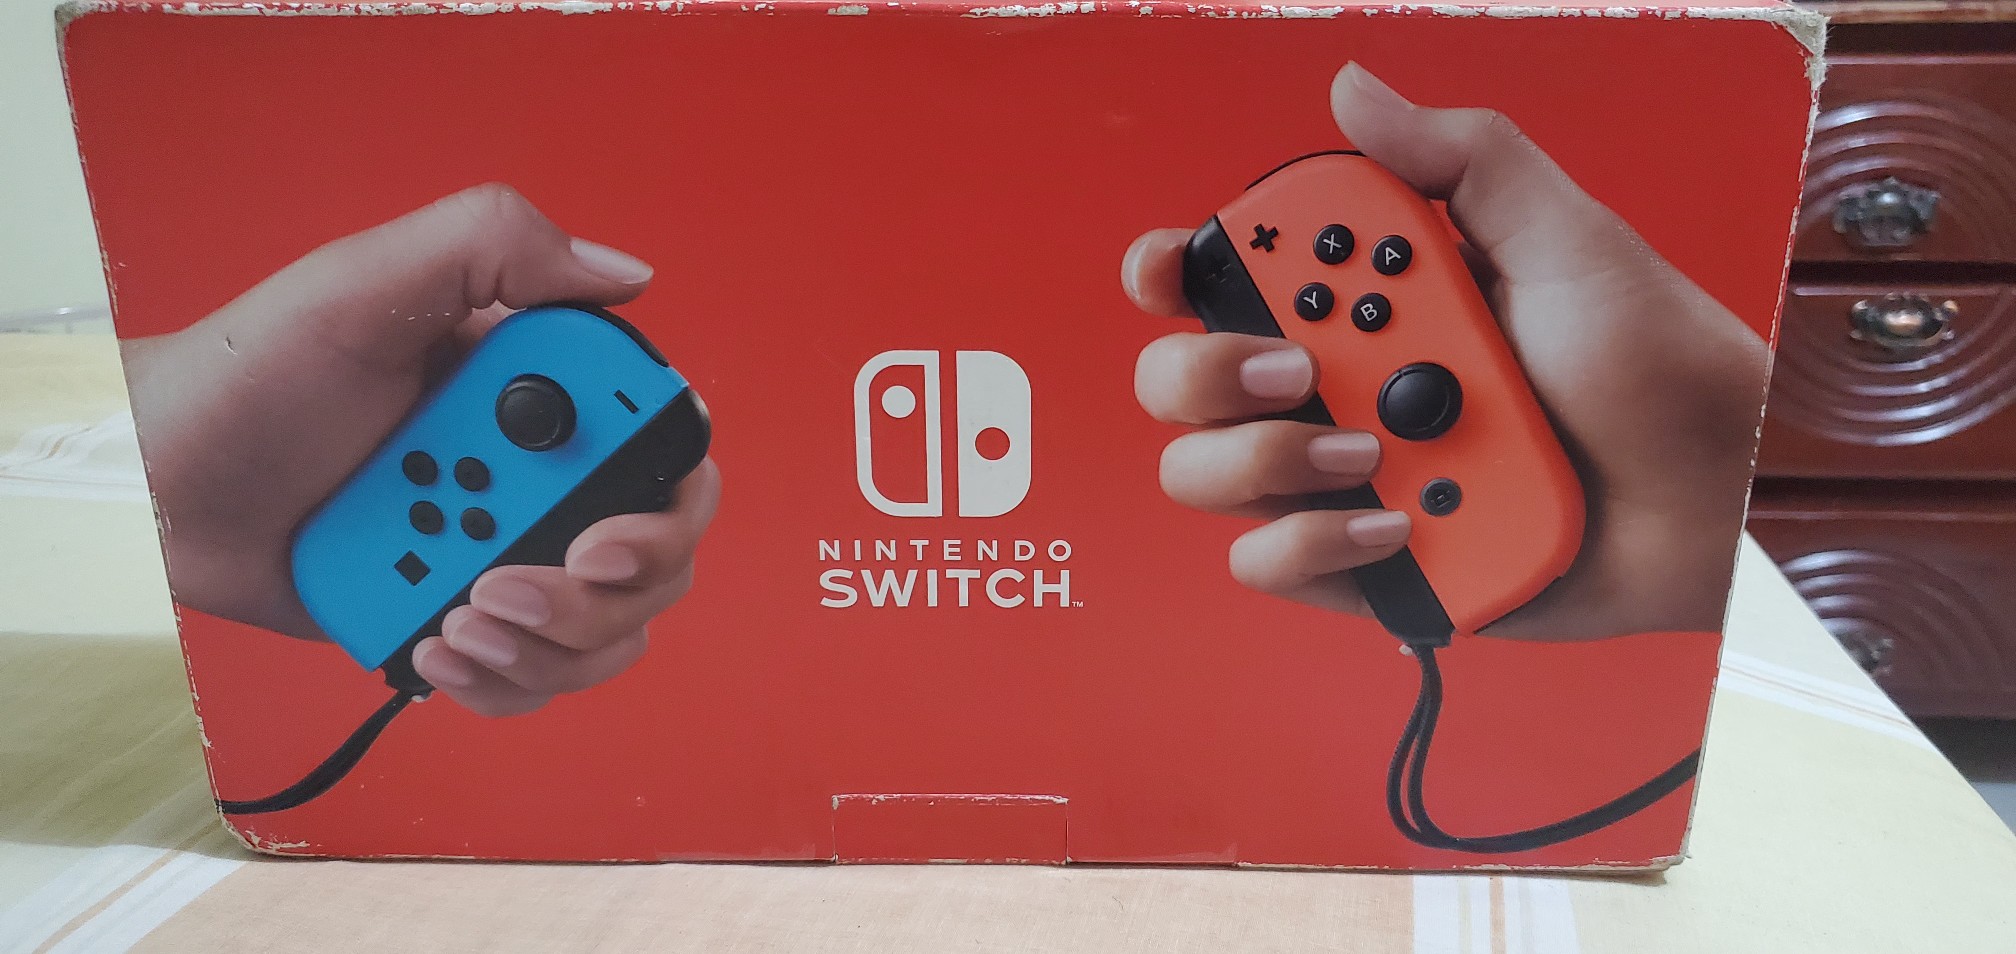 consolas y videojuegos - Nintendo switch v2 versión mejorada